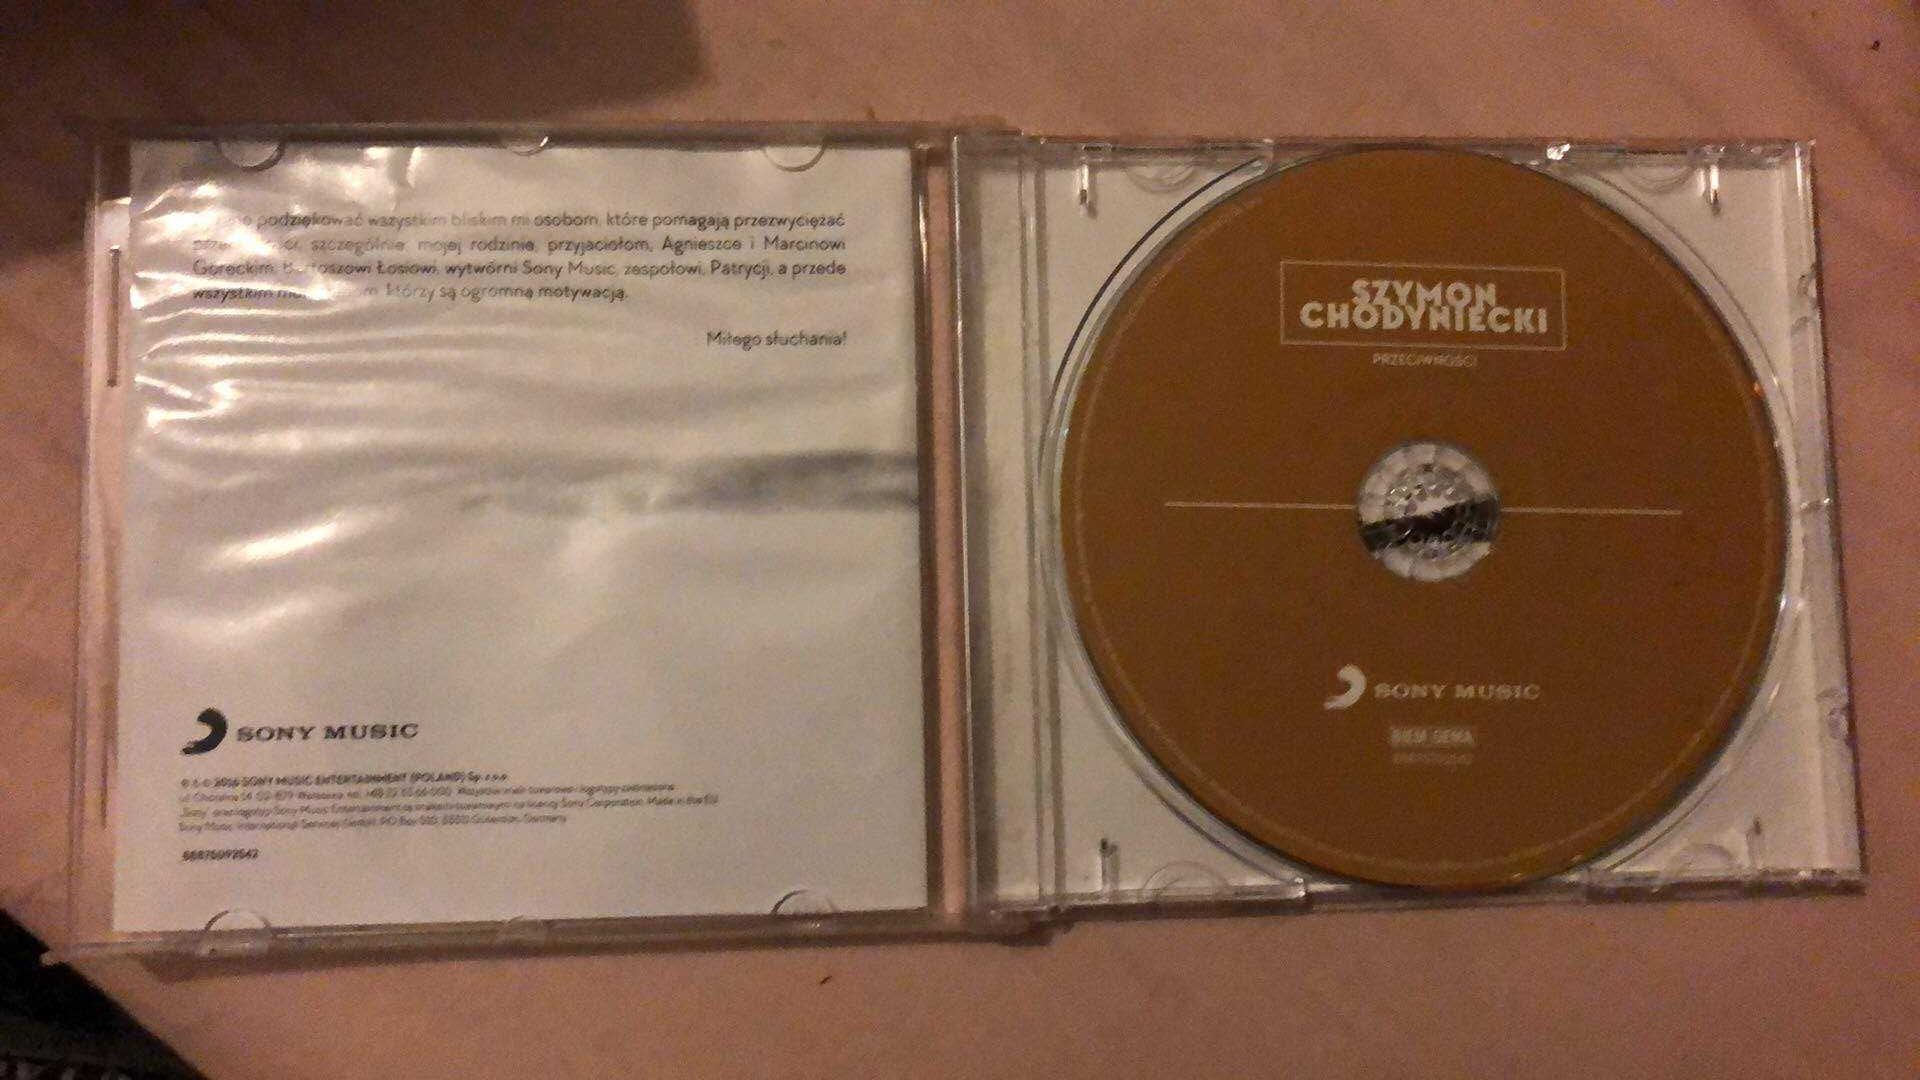 Szymon Chodyniecki-Przeciwności CD